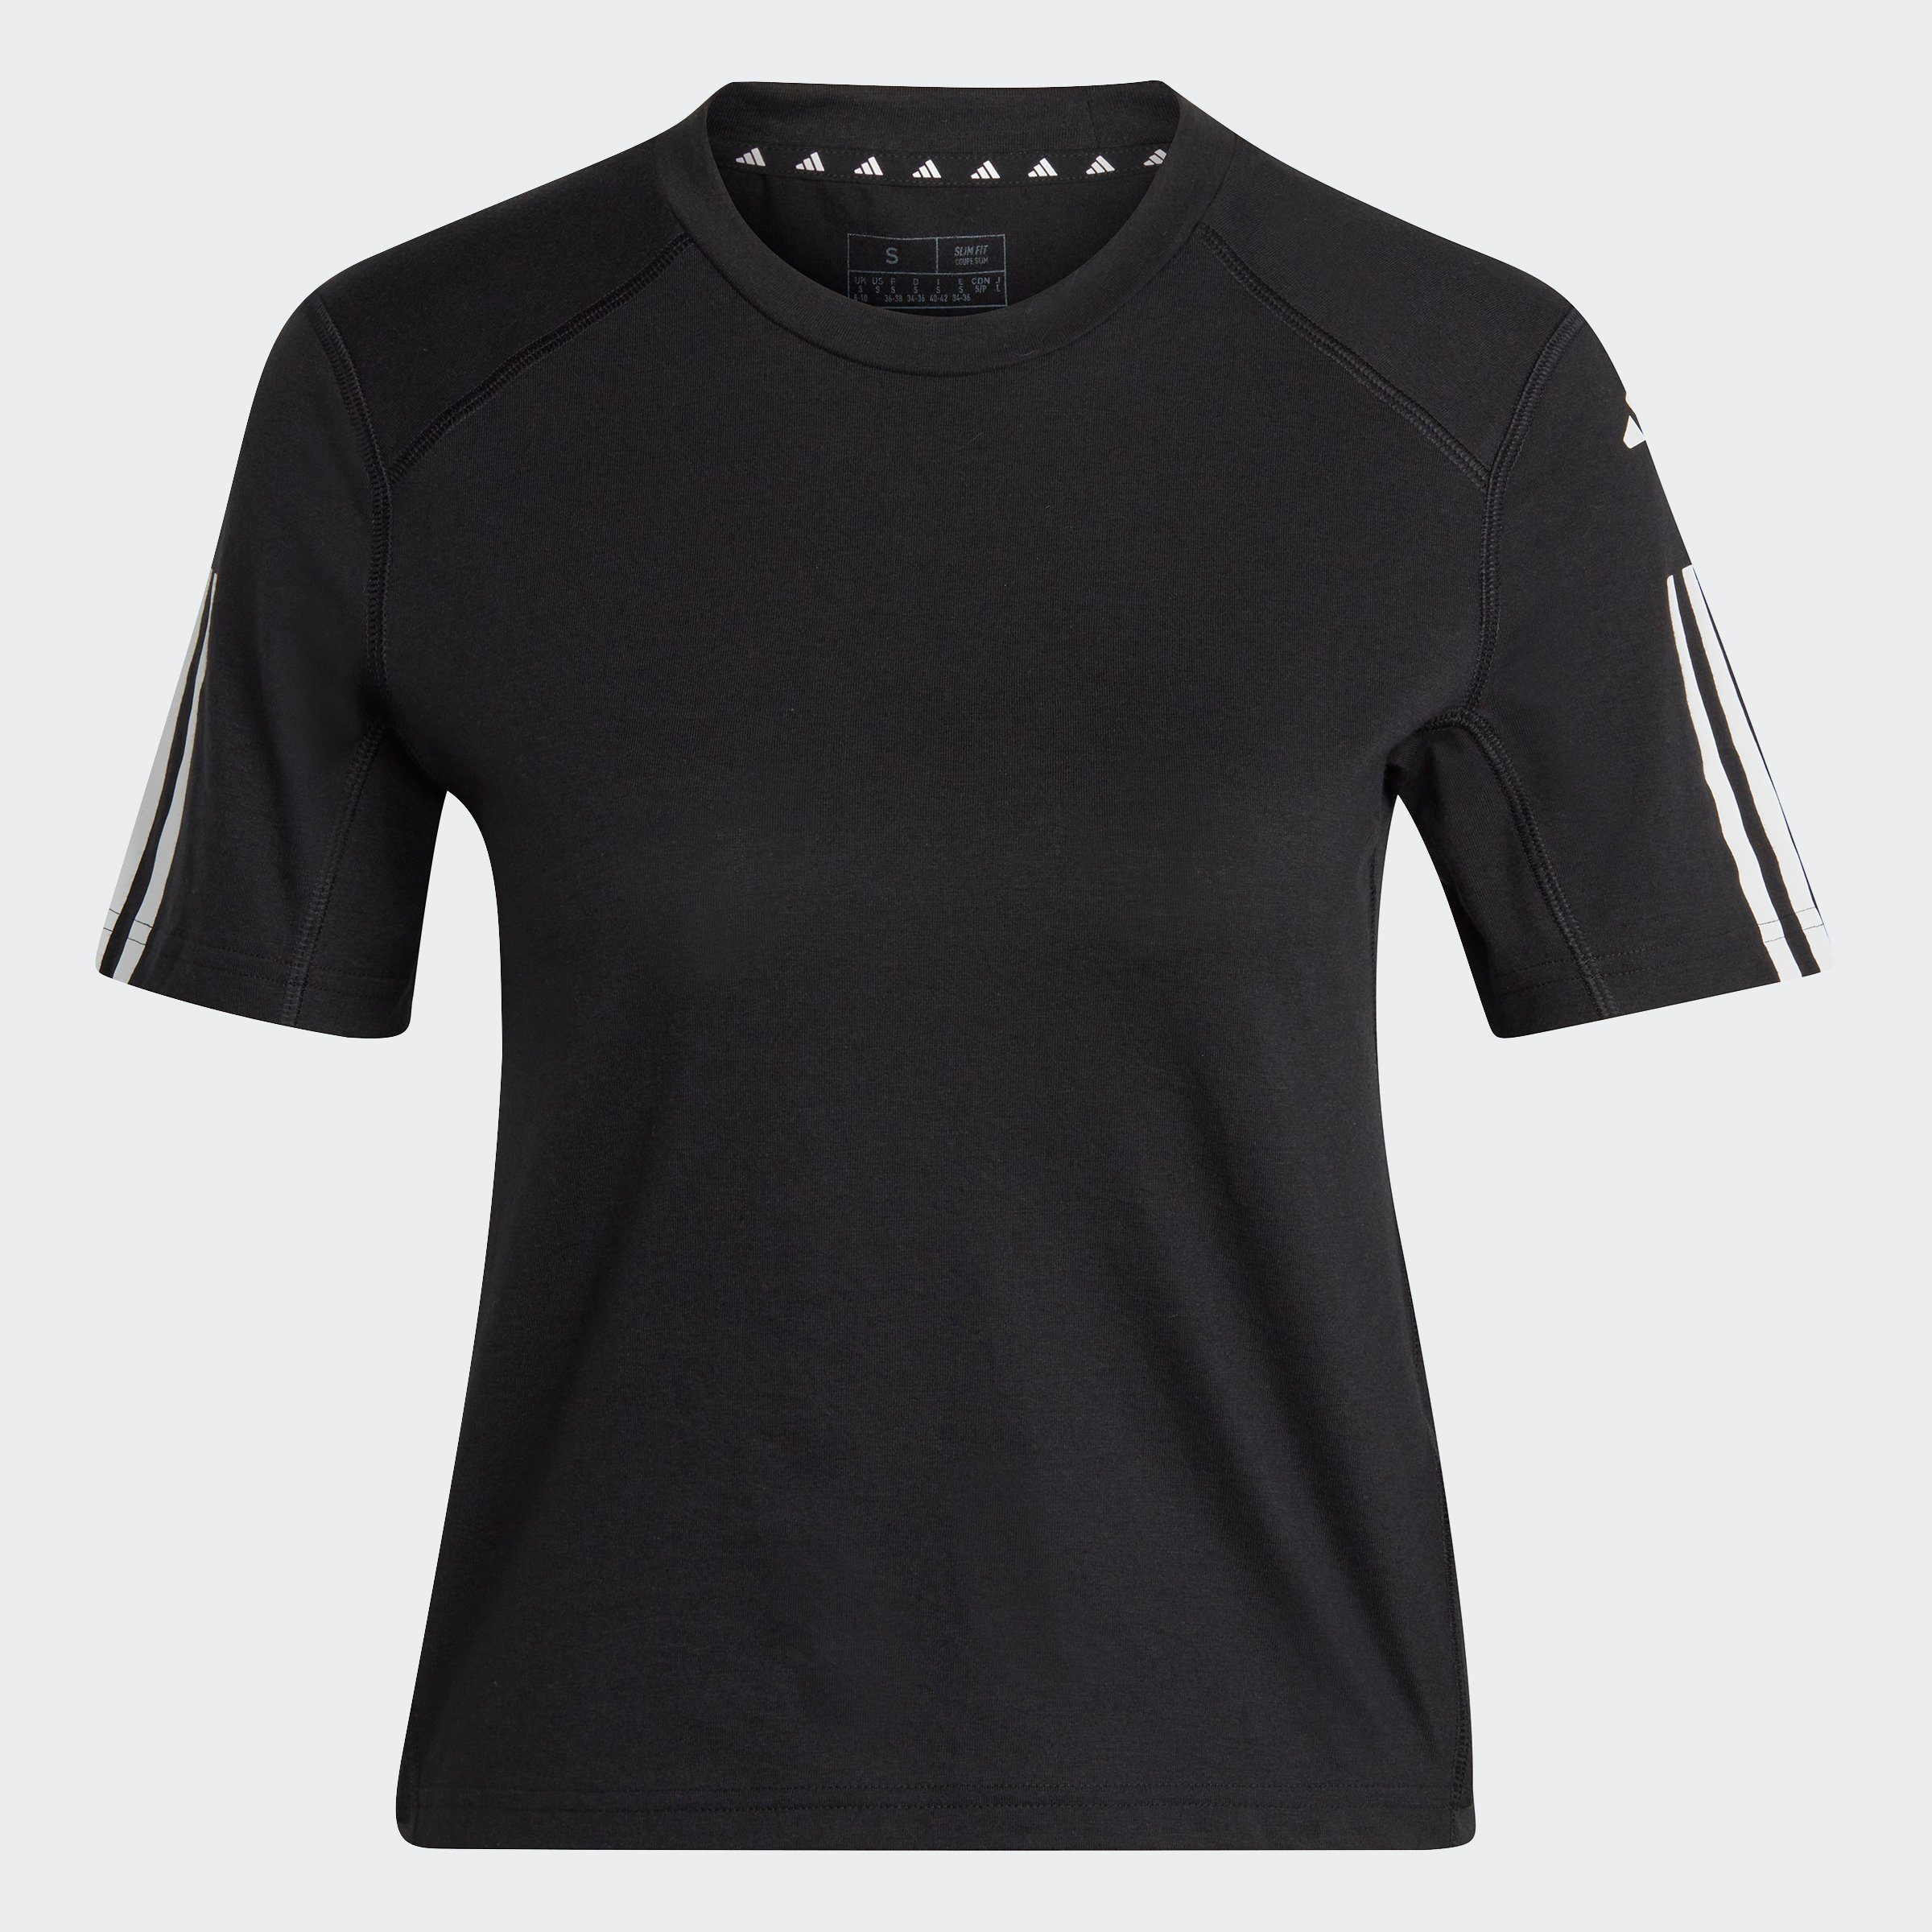 ESSENTIALS White Black 3-STREIFEN TRAIN / T-Shirt CROP TRAIN adidas Performance COTTON